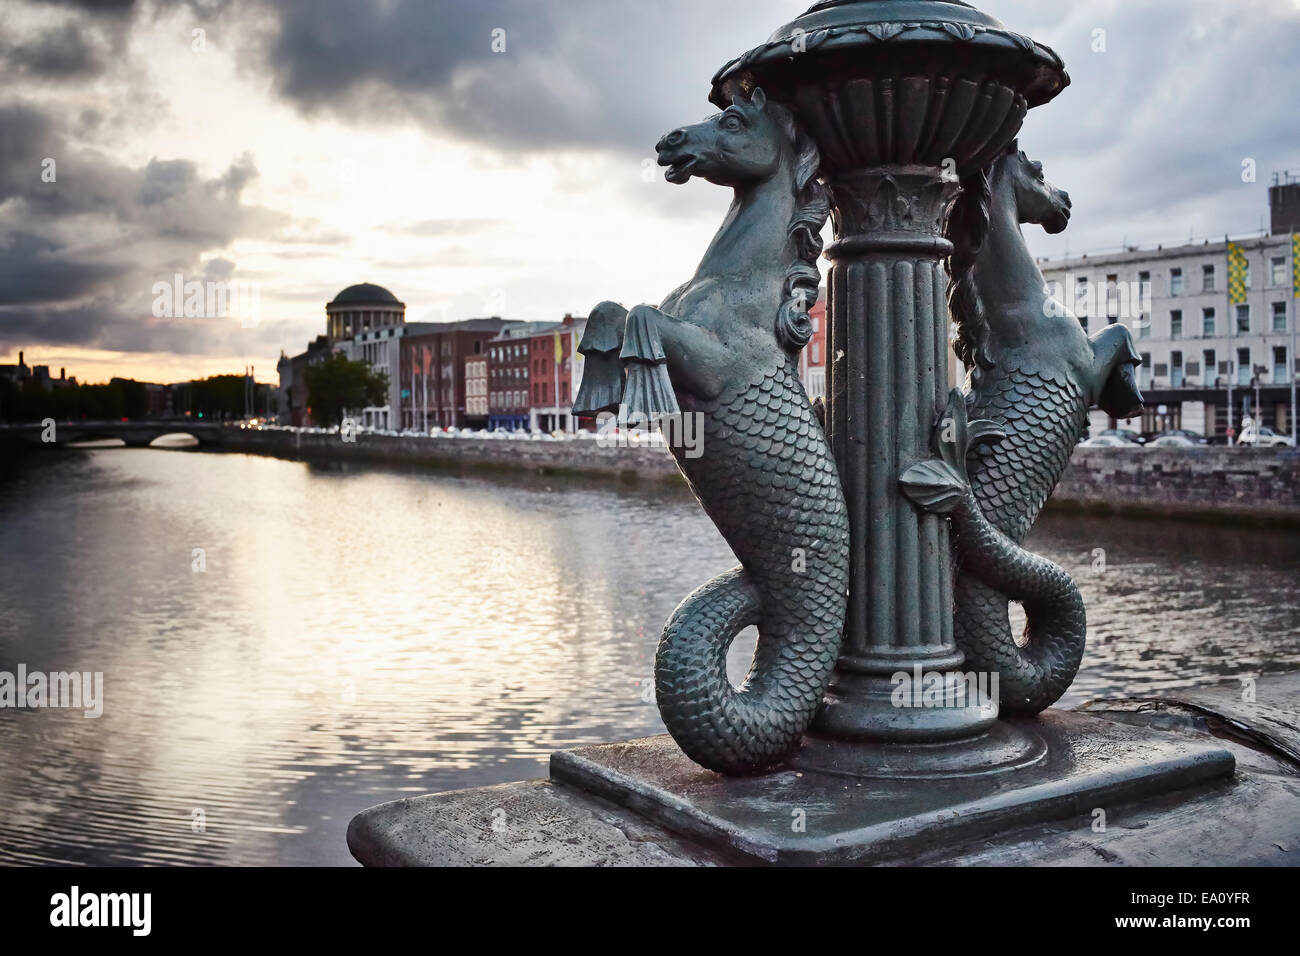 Détail d'hippocampes sur Grattan bridge, Dublin, République d'Irlande Banque D'Images